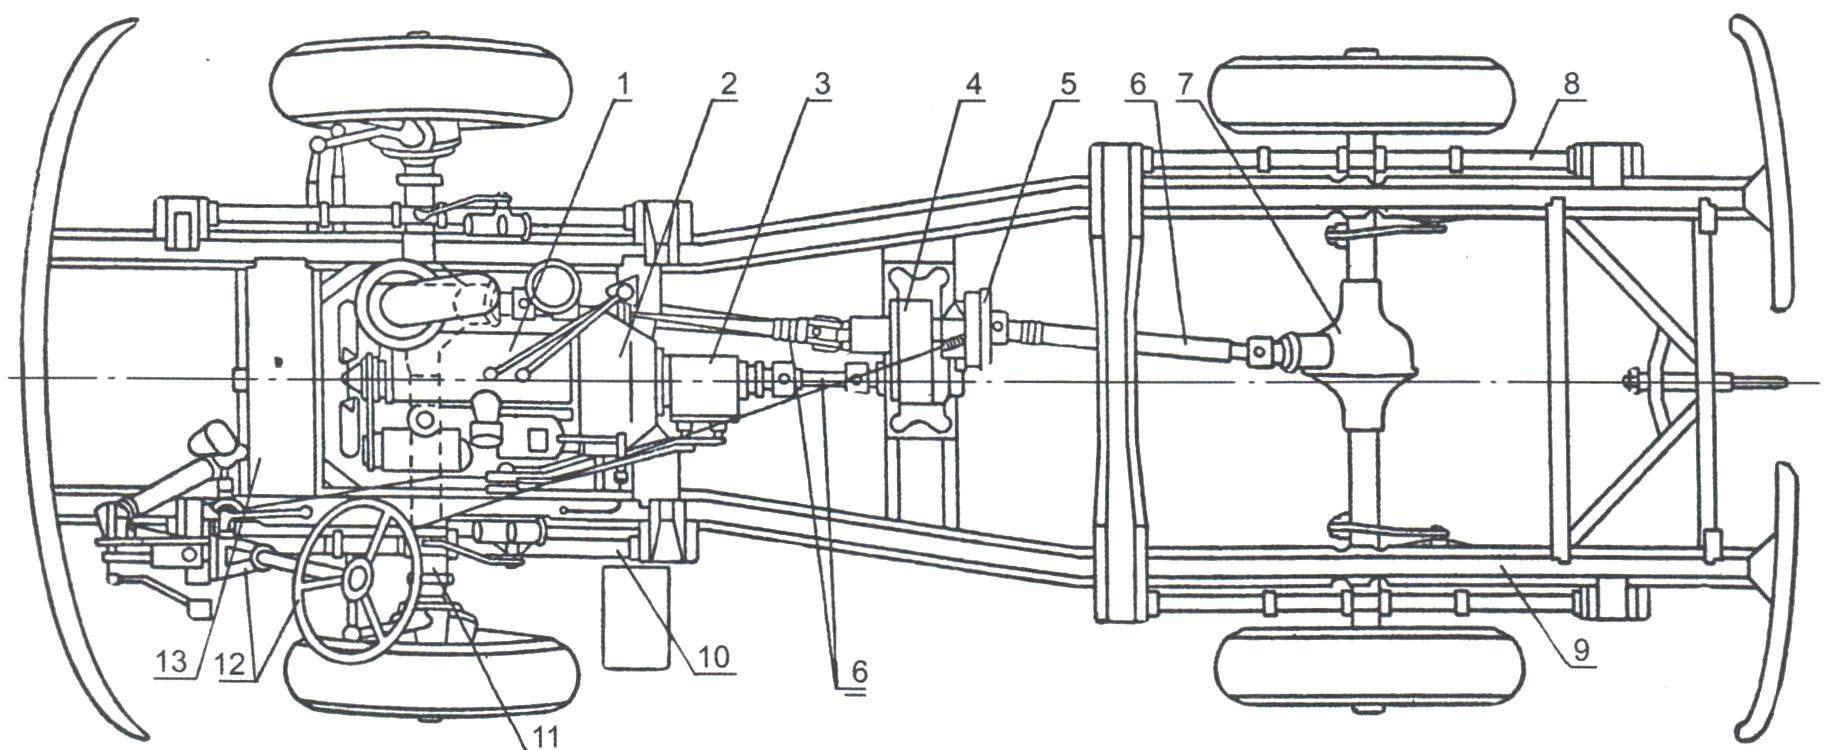 An arrangement of basic components and assemblies passenger van UAZ-450